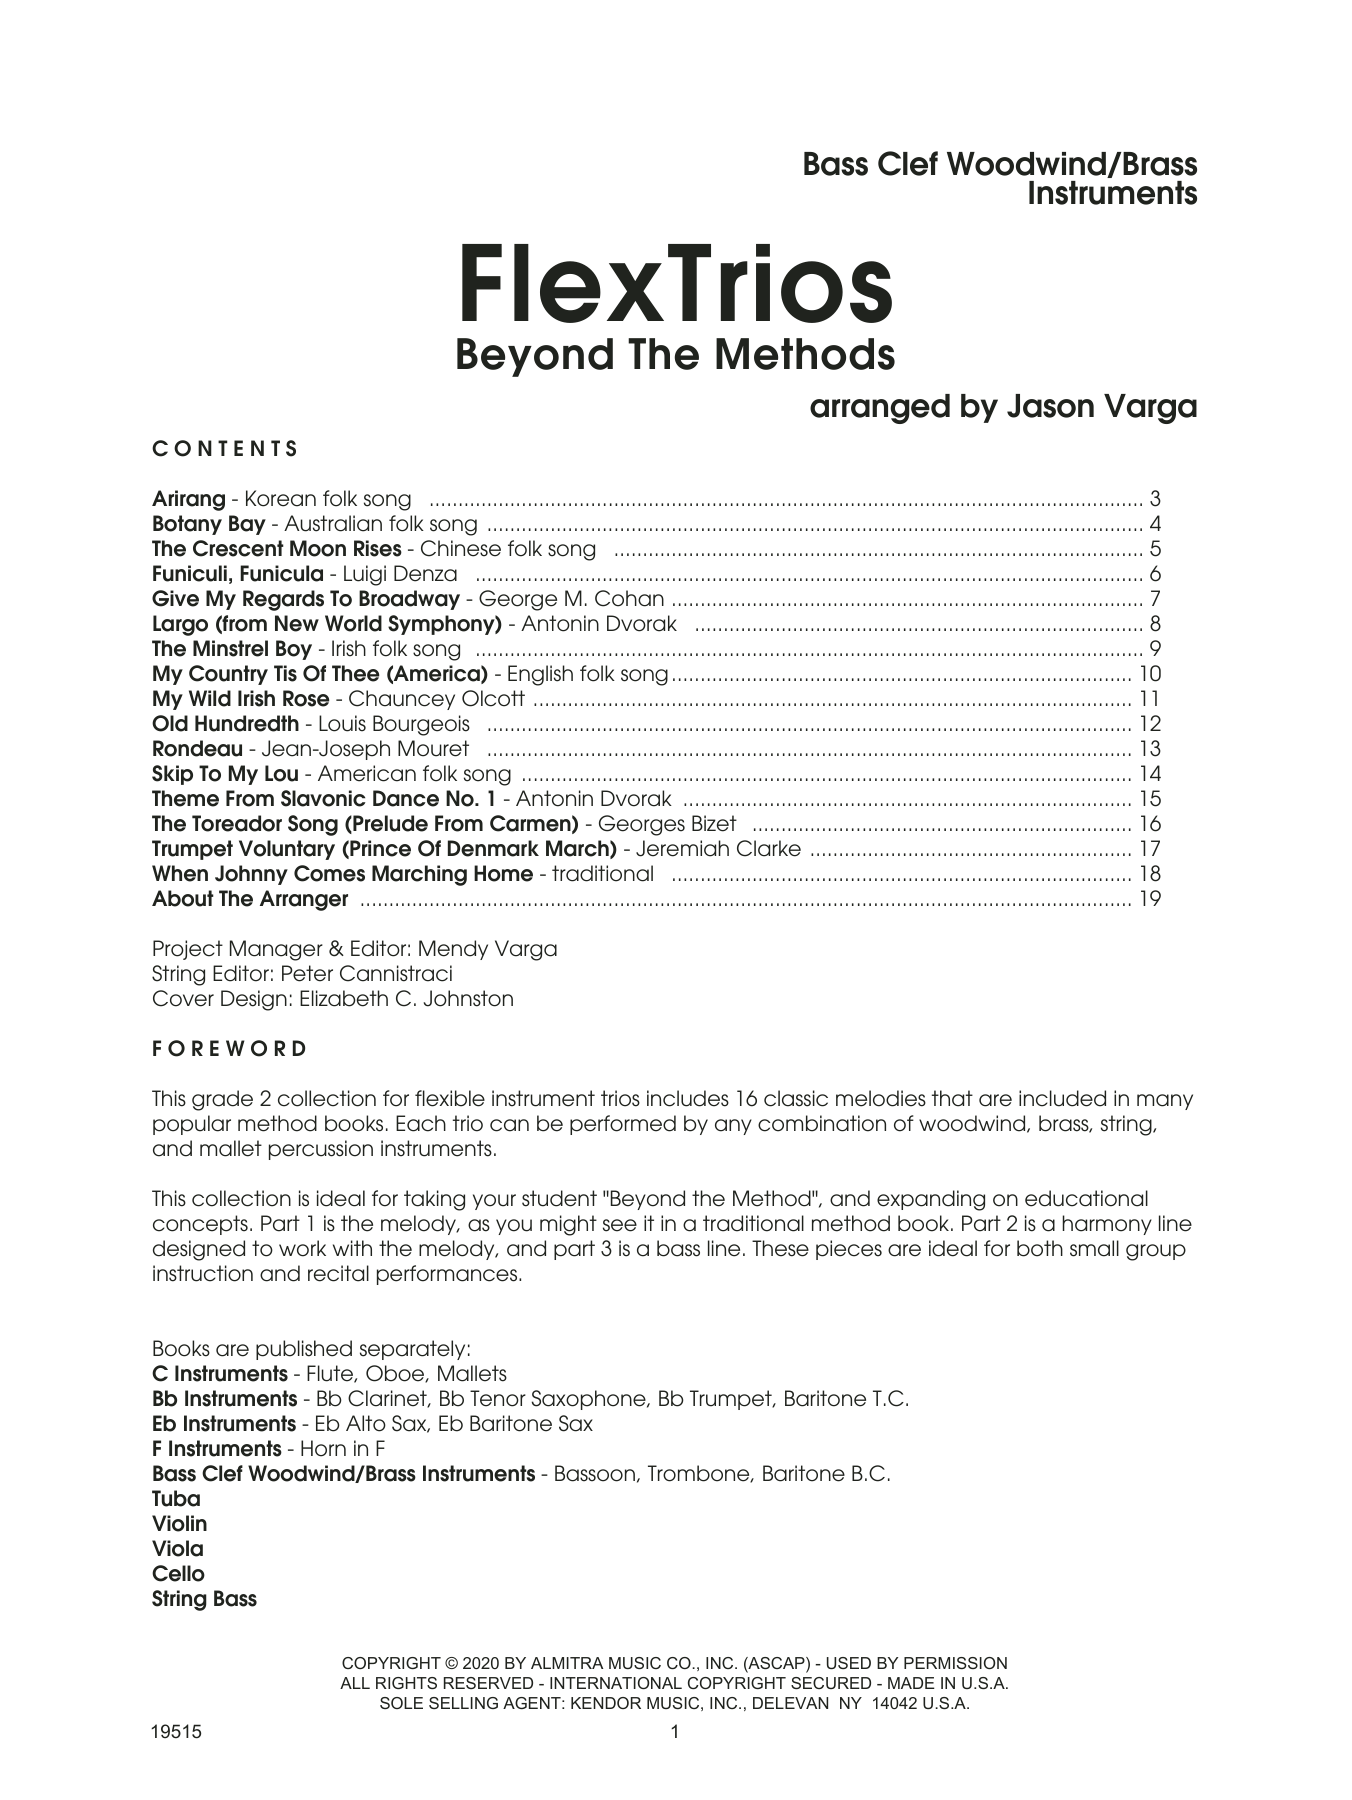 Download Jason Varga Flextrios - Beyond The Methods (16 Piec Sheet Music